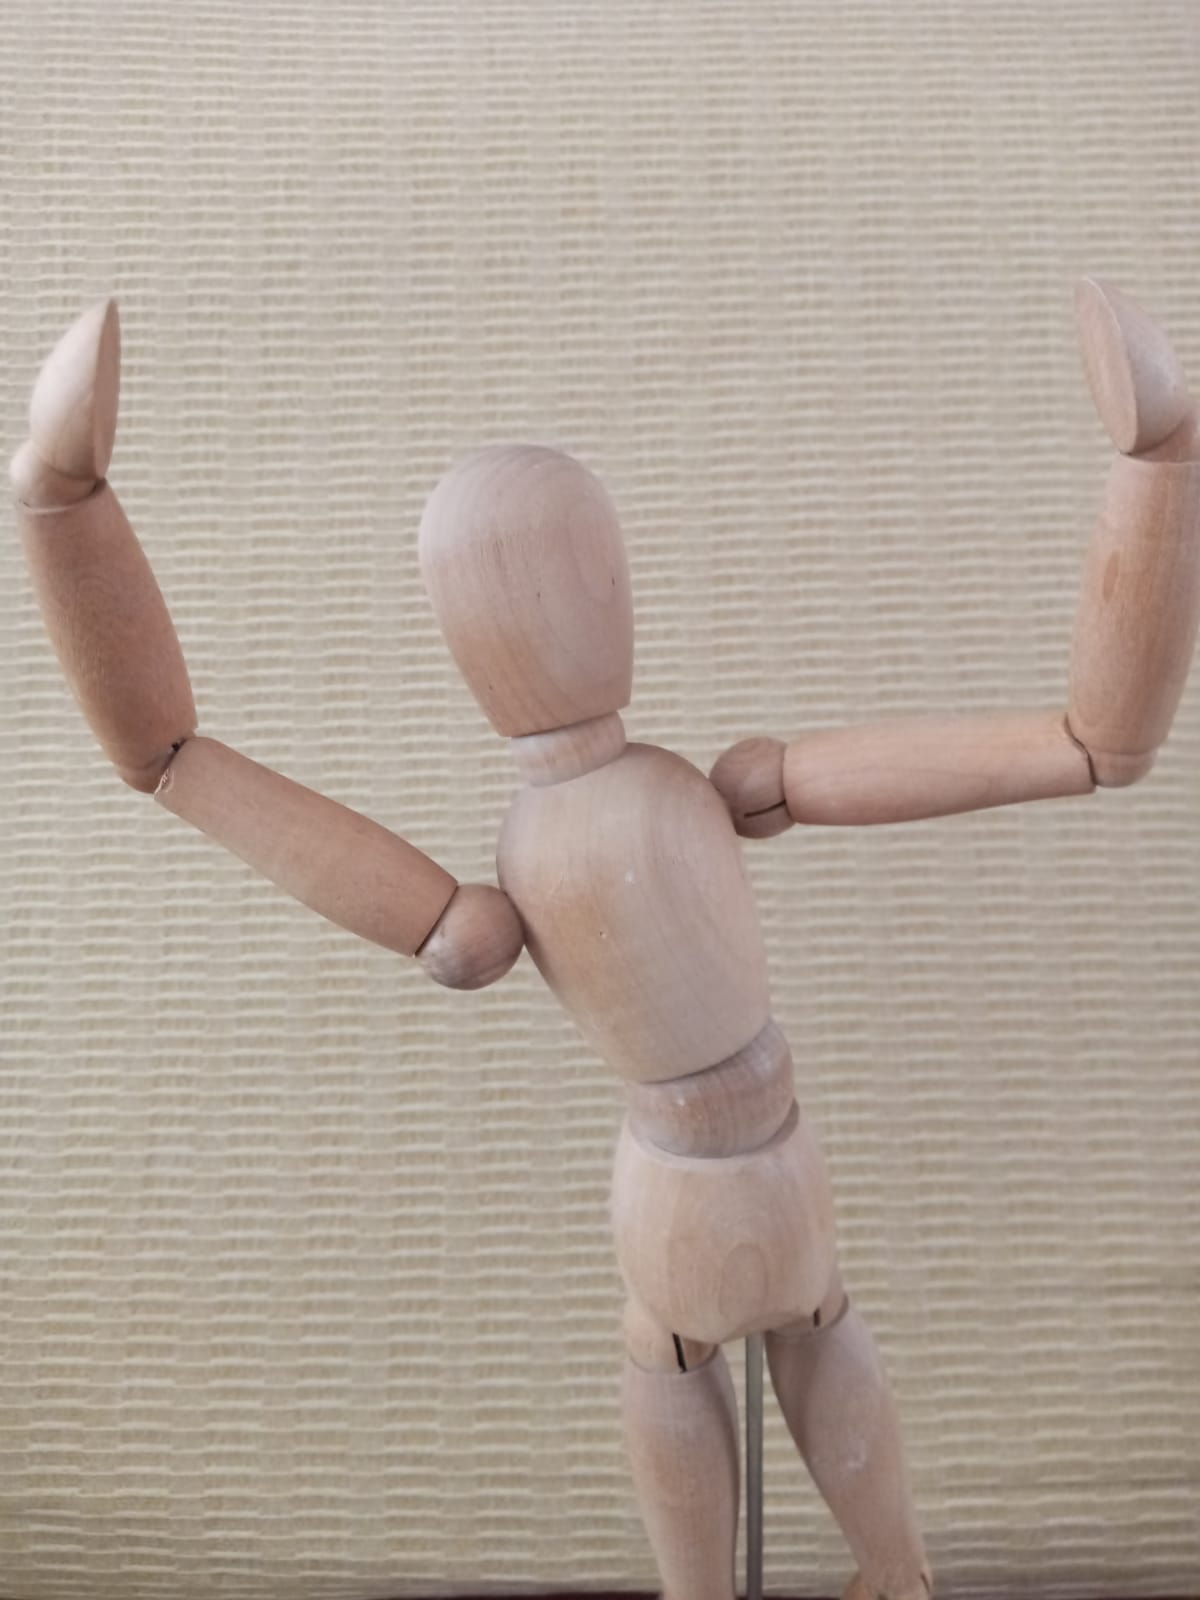 La imagen muestra una figura articulada con los brazos abiertos en alto